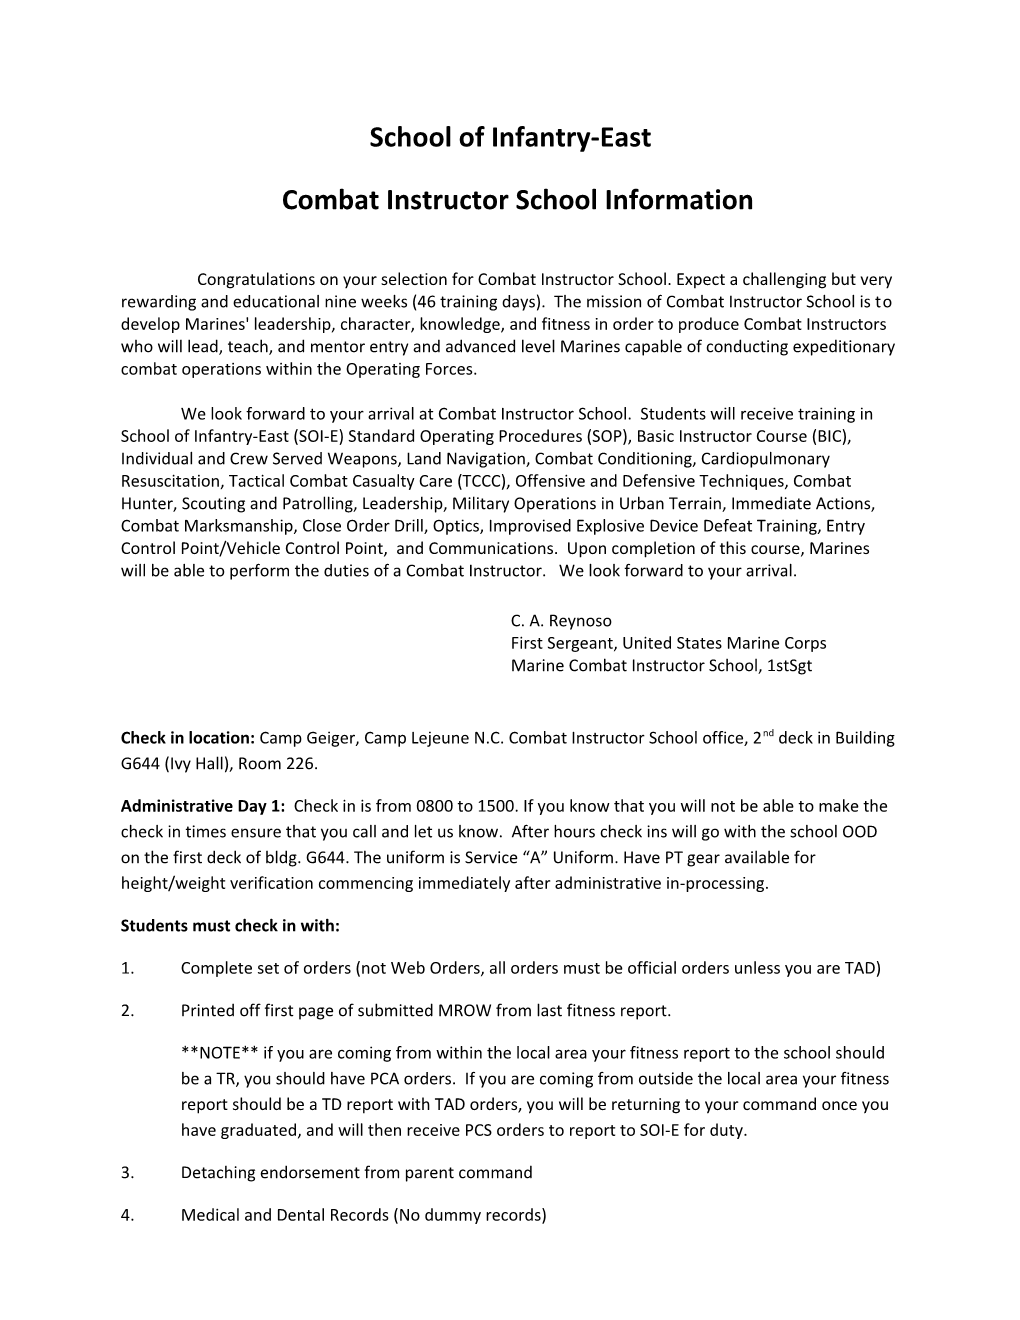 Combat Instructor School Information